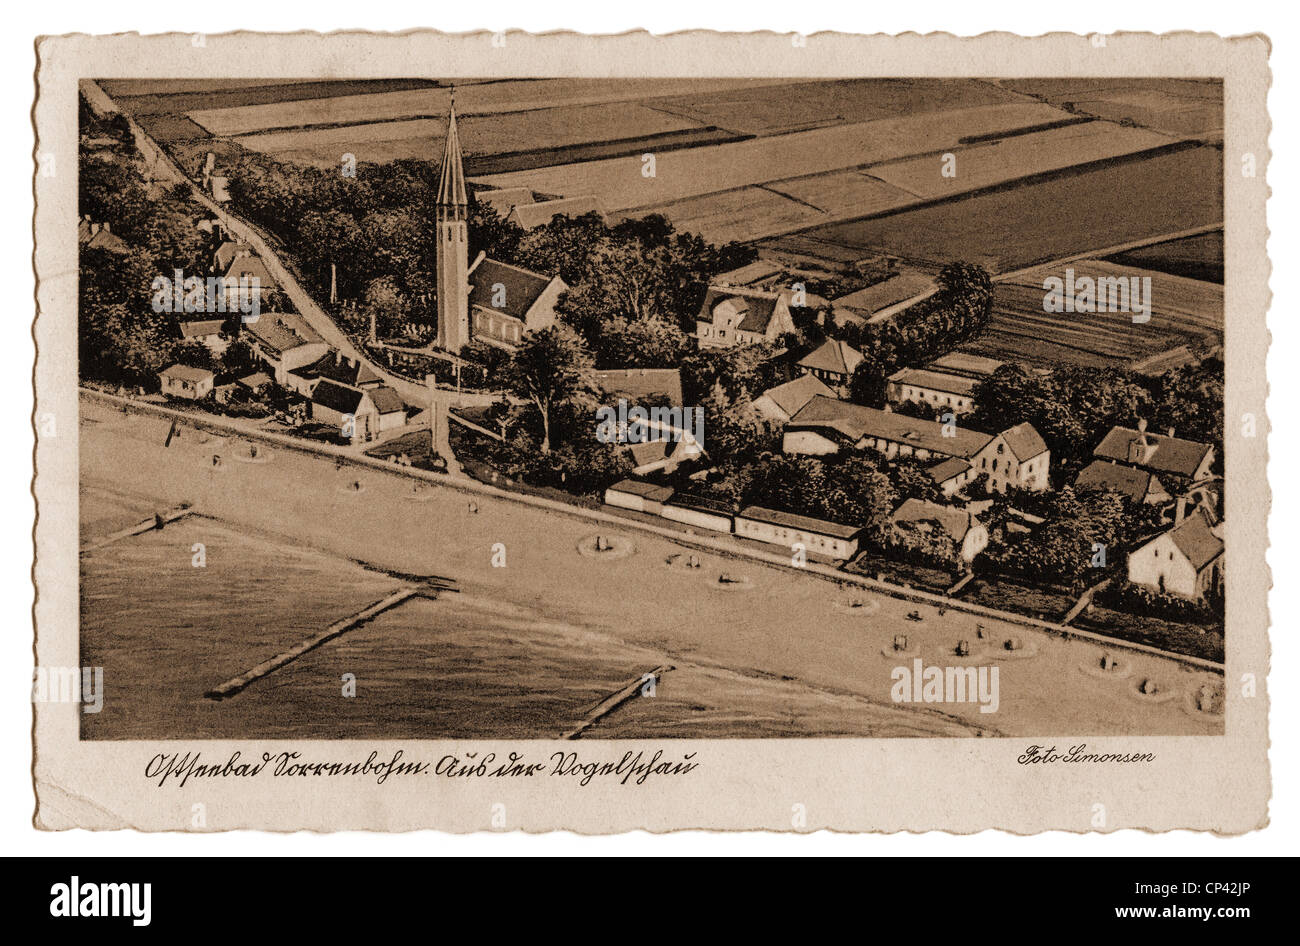 Baden, Badeort, Sarbinowo (Sorenbohm), weiter Pommerania, Luftaufnahme, Ansichtskarte, gestempelt 1942, Zusatzrechte-Clearences-nicht vorhanden Stockfoto